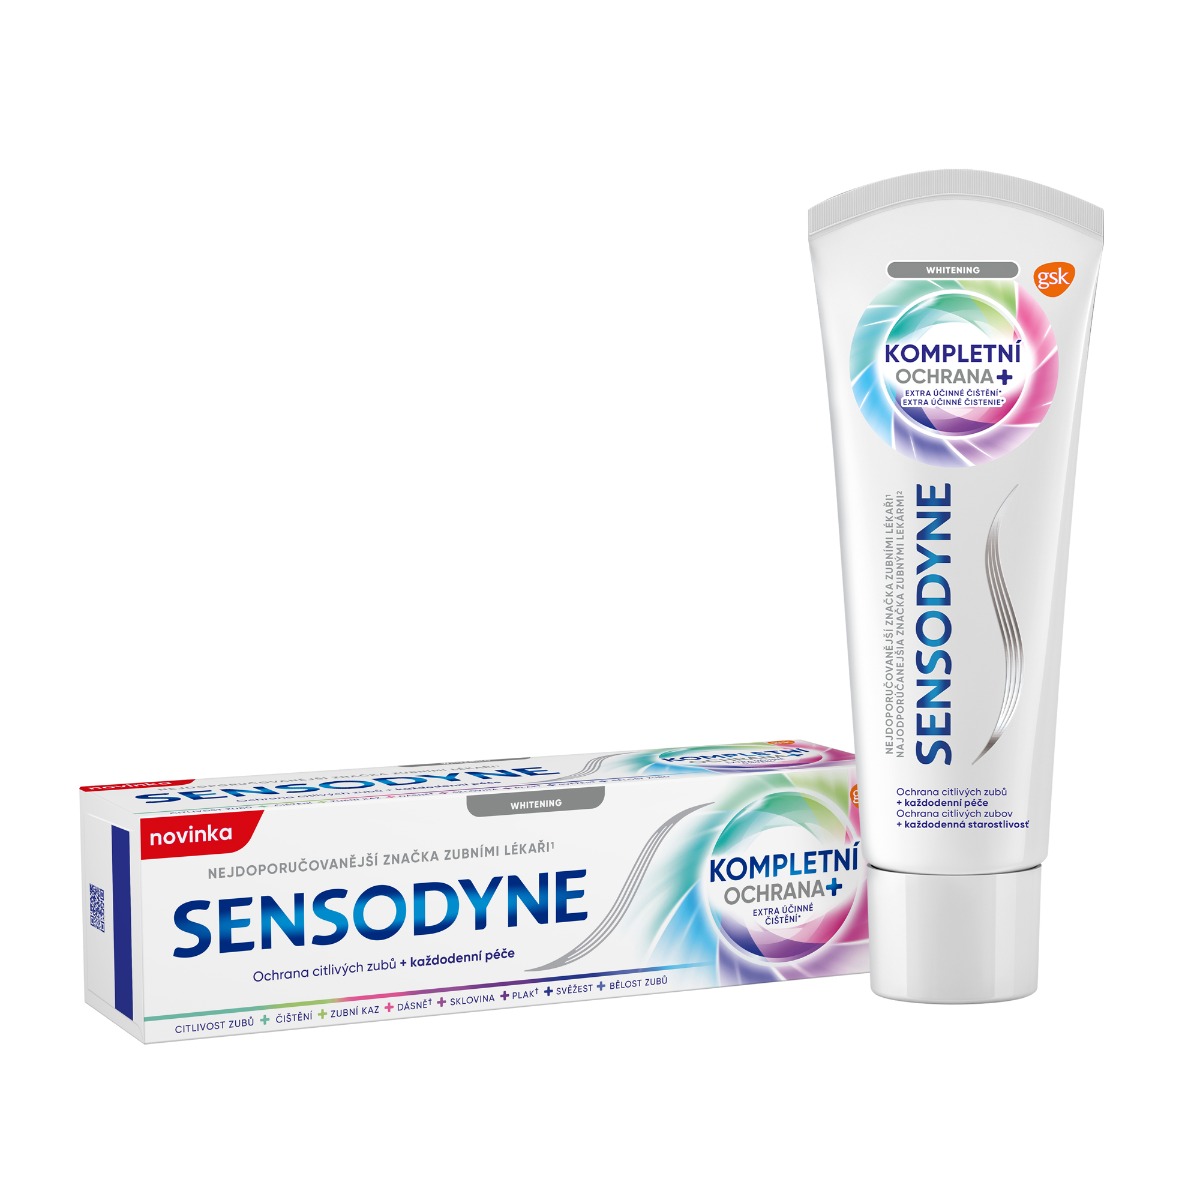 Sensodyne Kompletní ochrana Whitening zubní pasta 75 ml Sensodyne